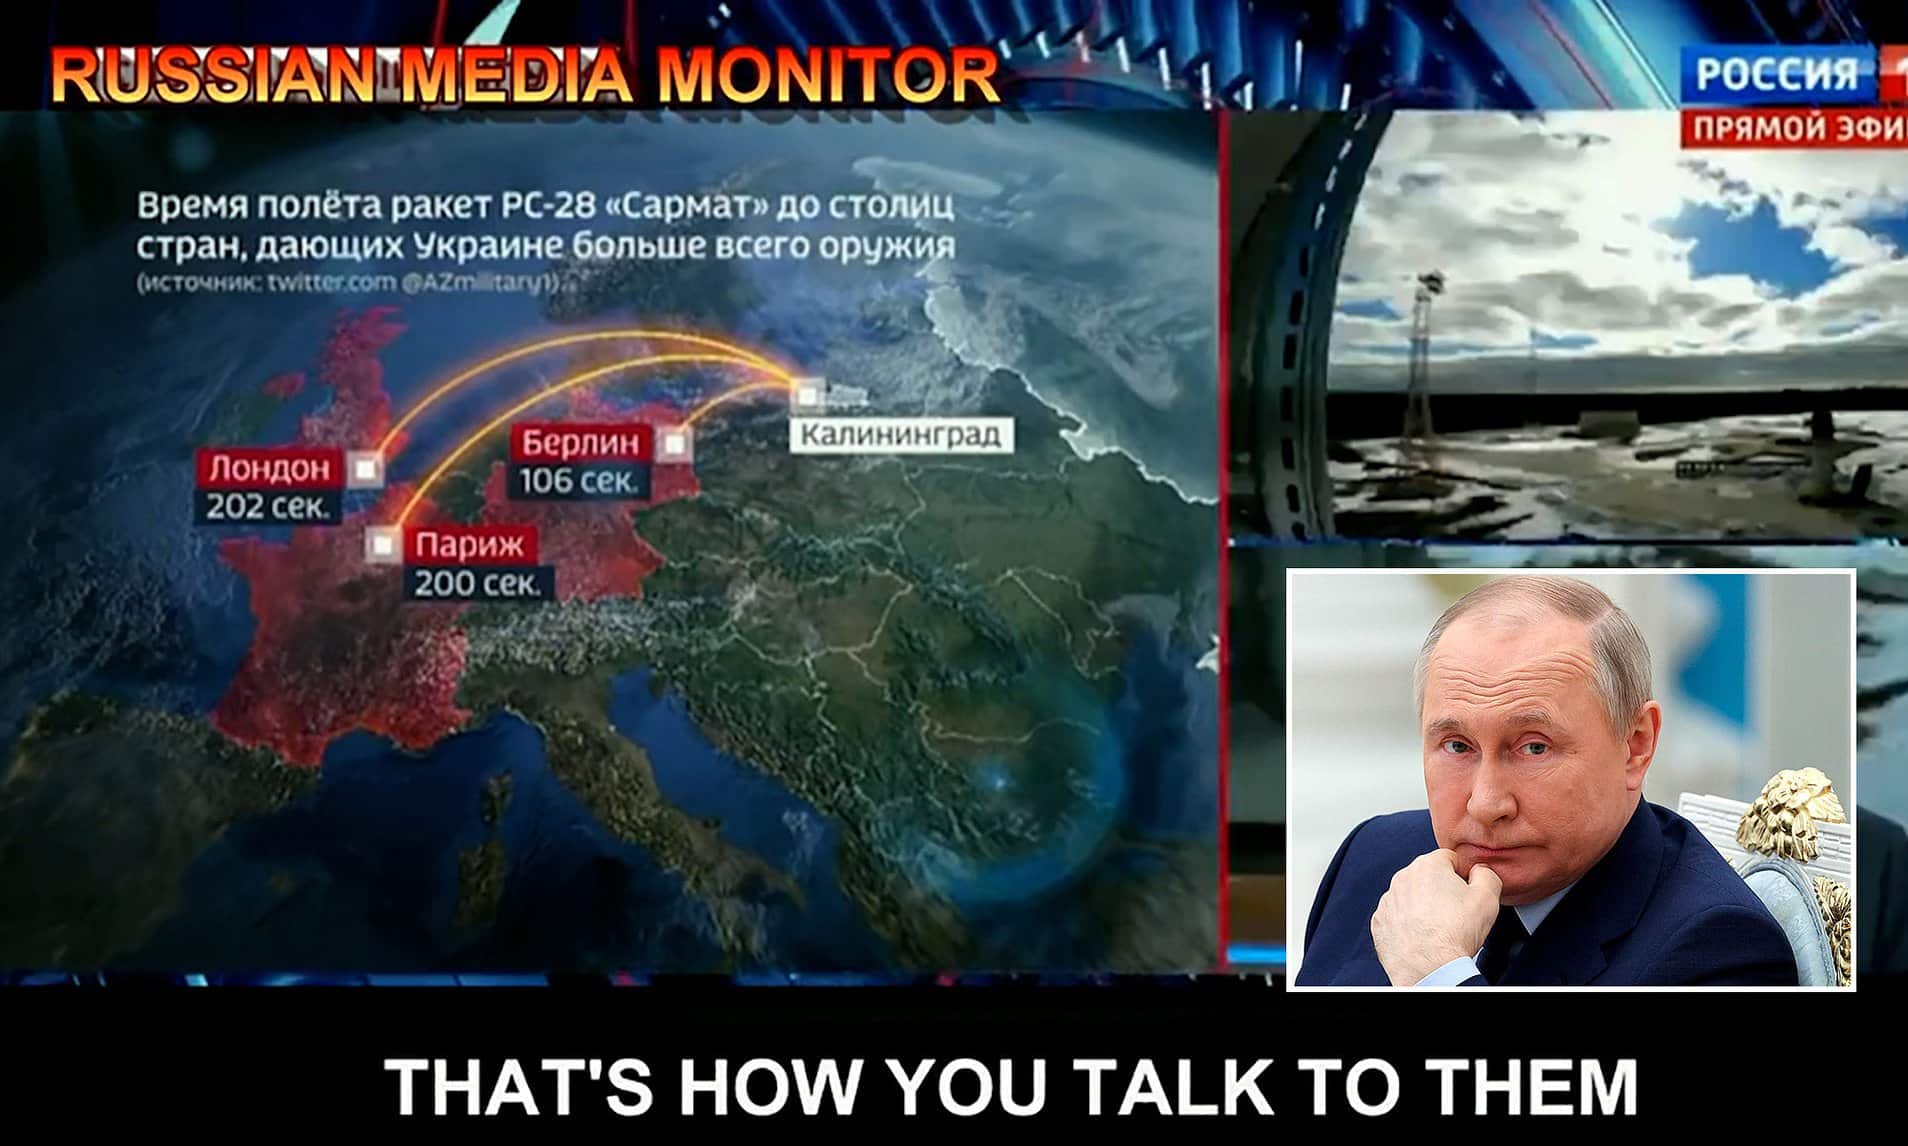 شاهد: التلفزيون الروسي الرسمي يناقش فكرة ضرب عواصم أوروبية بالنووي! watanserb.com